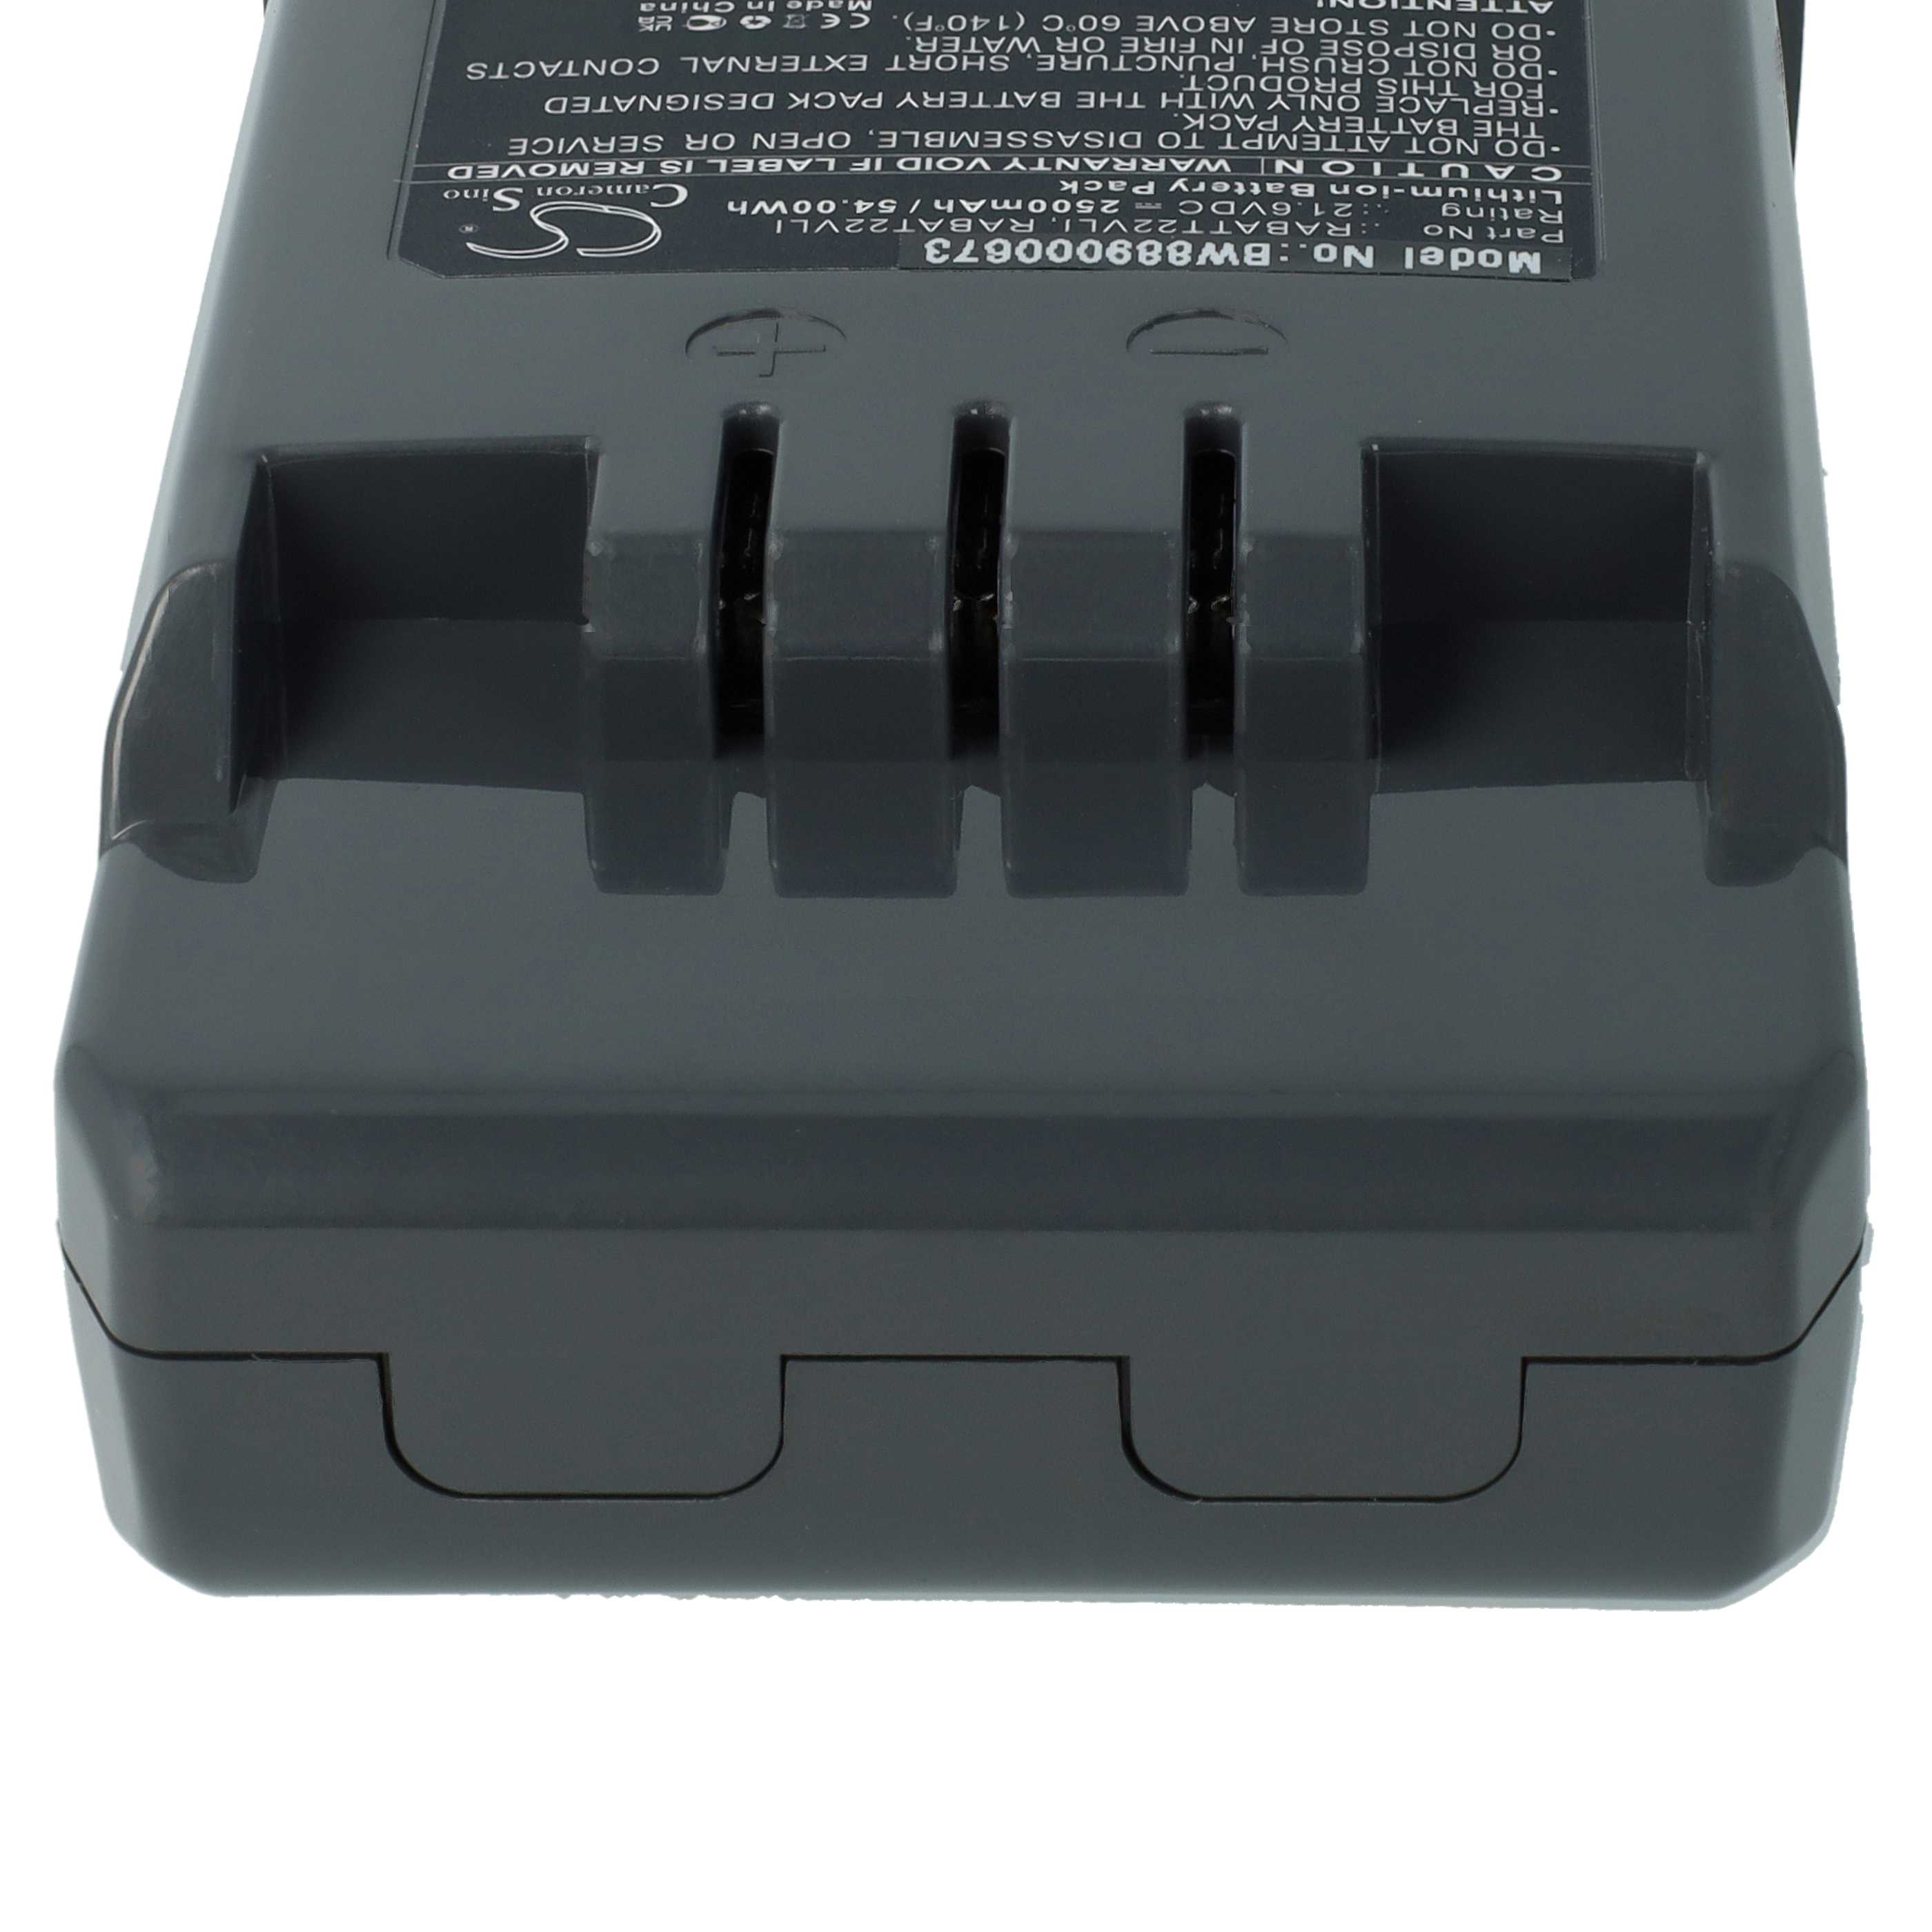 Batteria sostituisce Hoover RABAT22VLI, 6.20.40.01-0, 48023809 per aspirapolvere Hoover - 2500mAh 21,6V Li-Ion